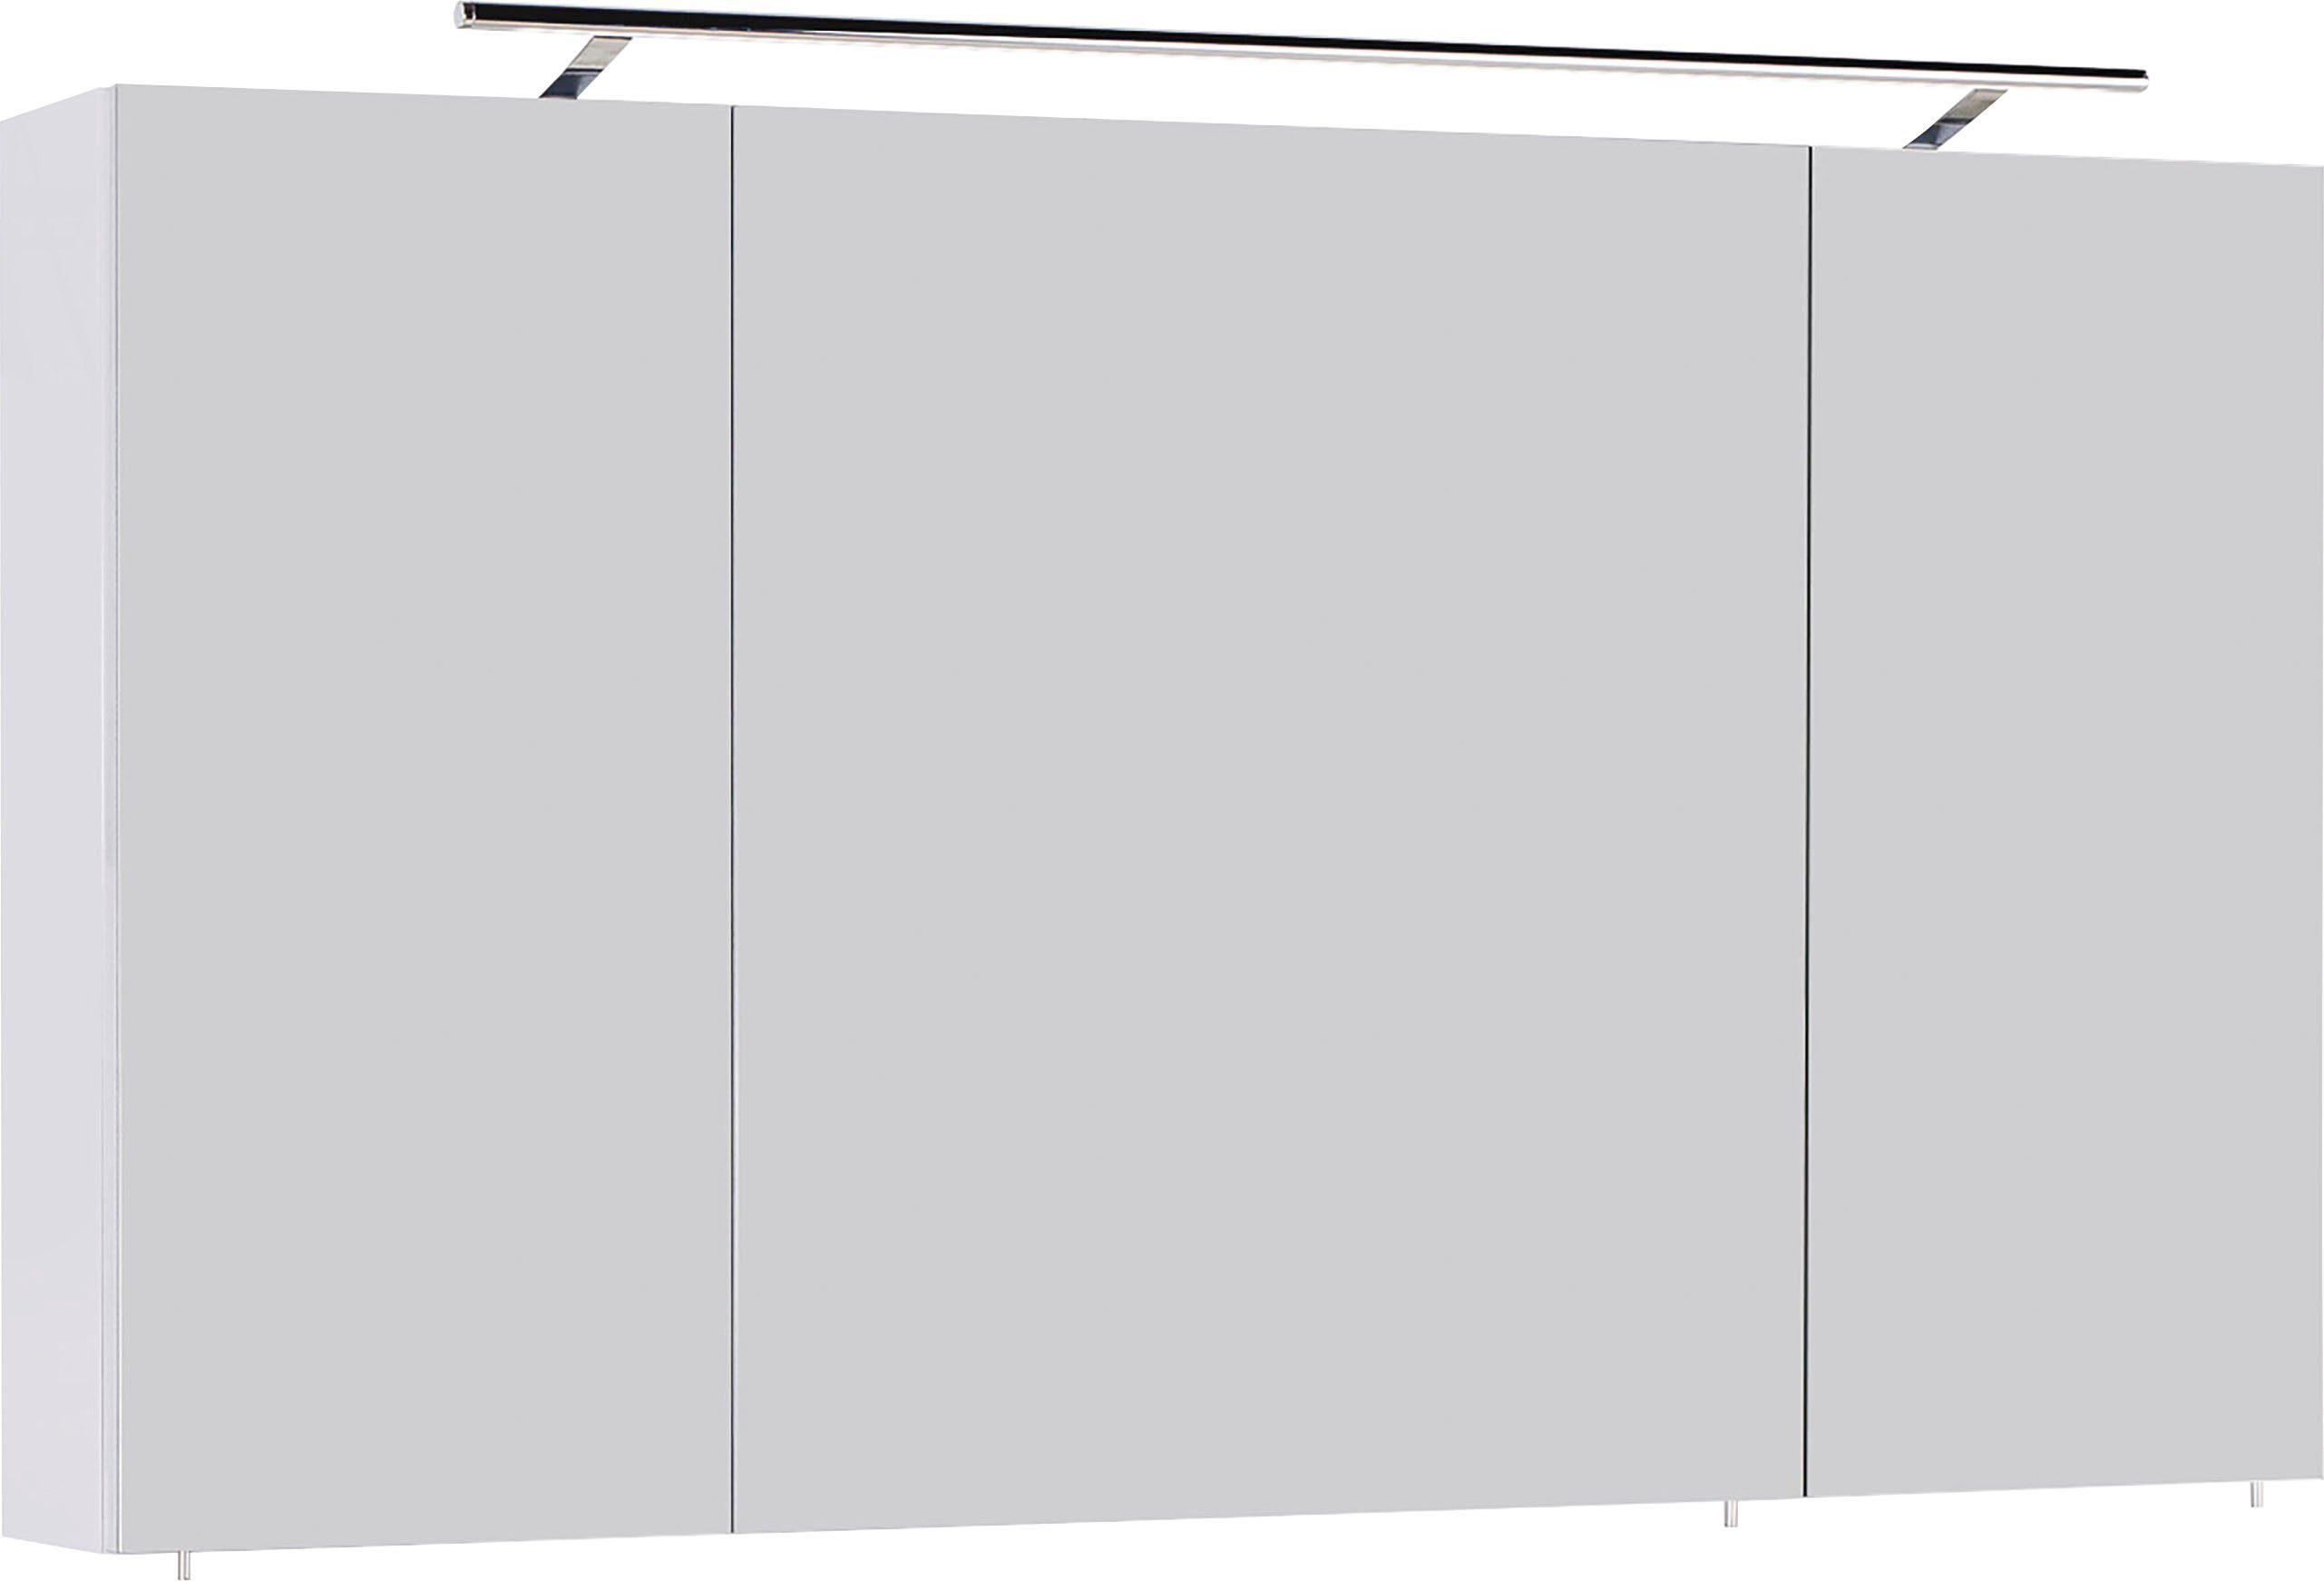 MARLIN Spiegelschrank 3040, Breite 120 cm weiß | weiß | Spiegelschränke